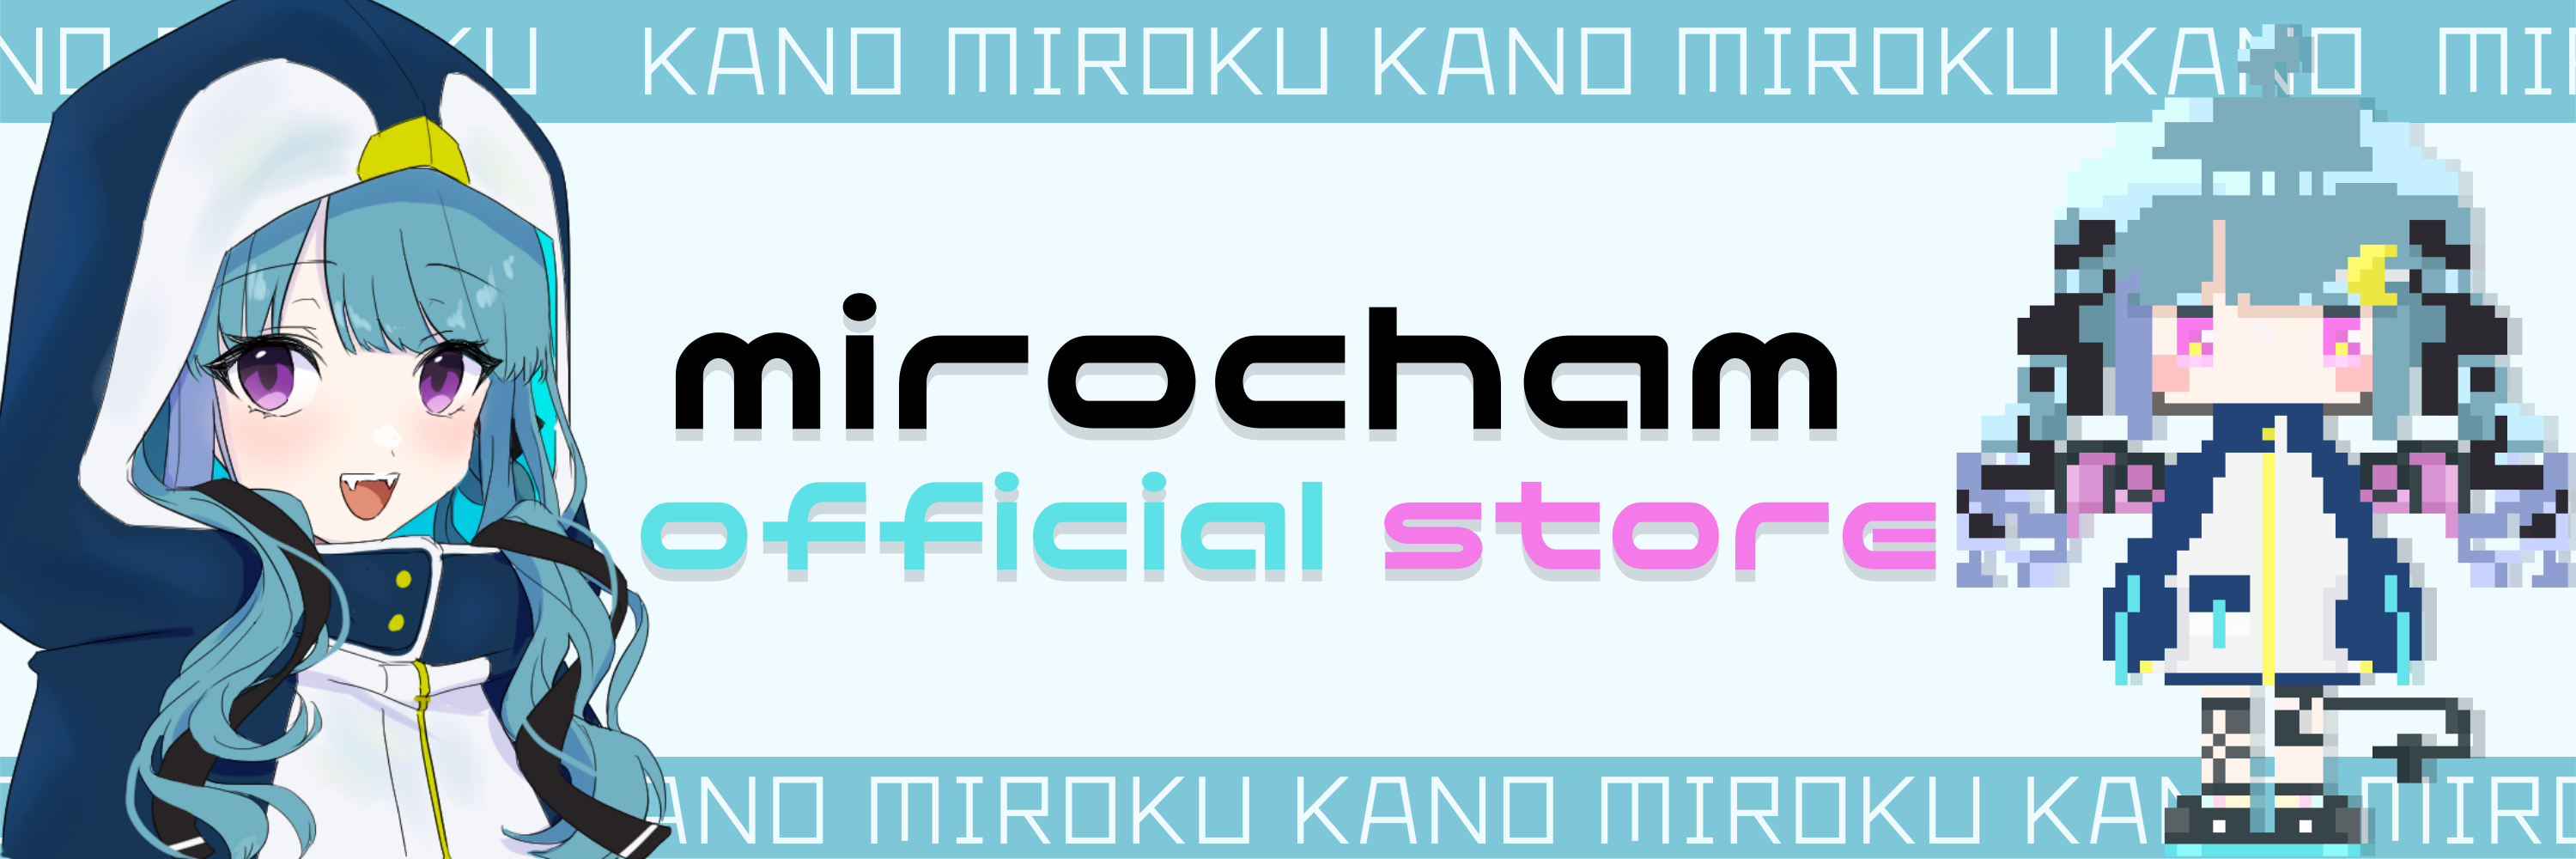 mirocham's official store